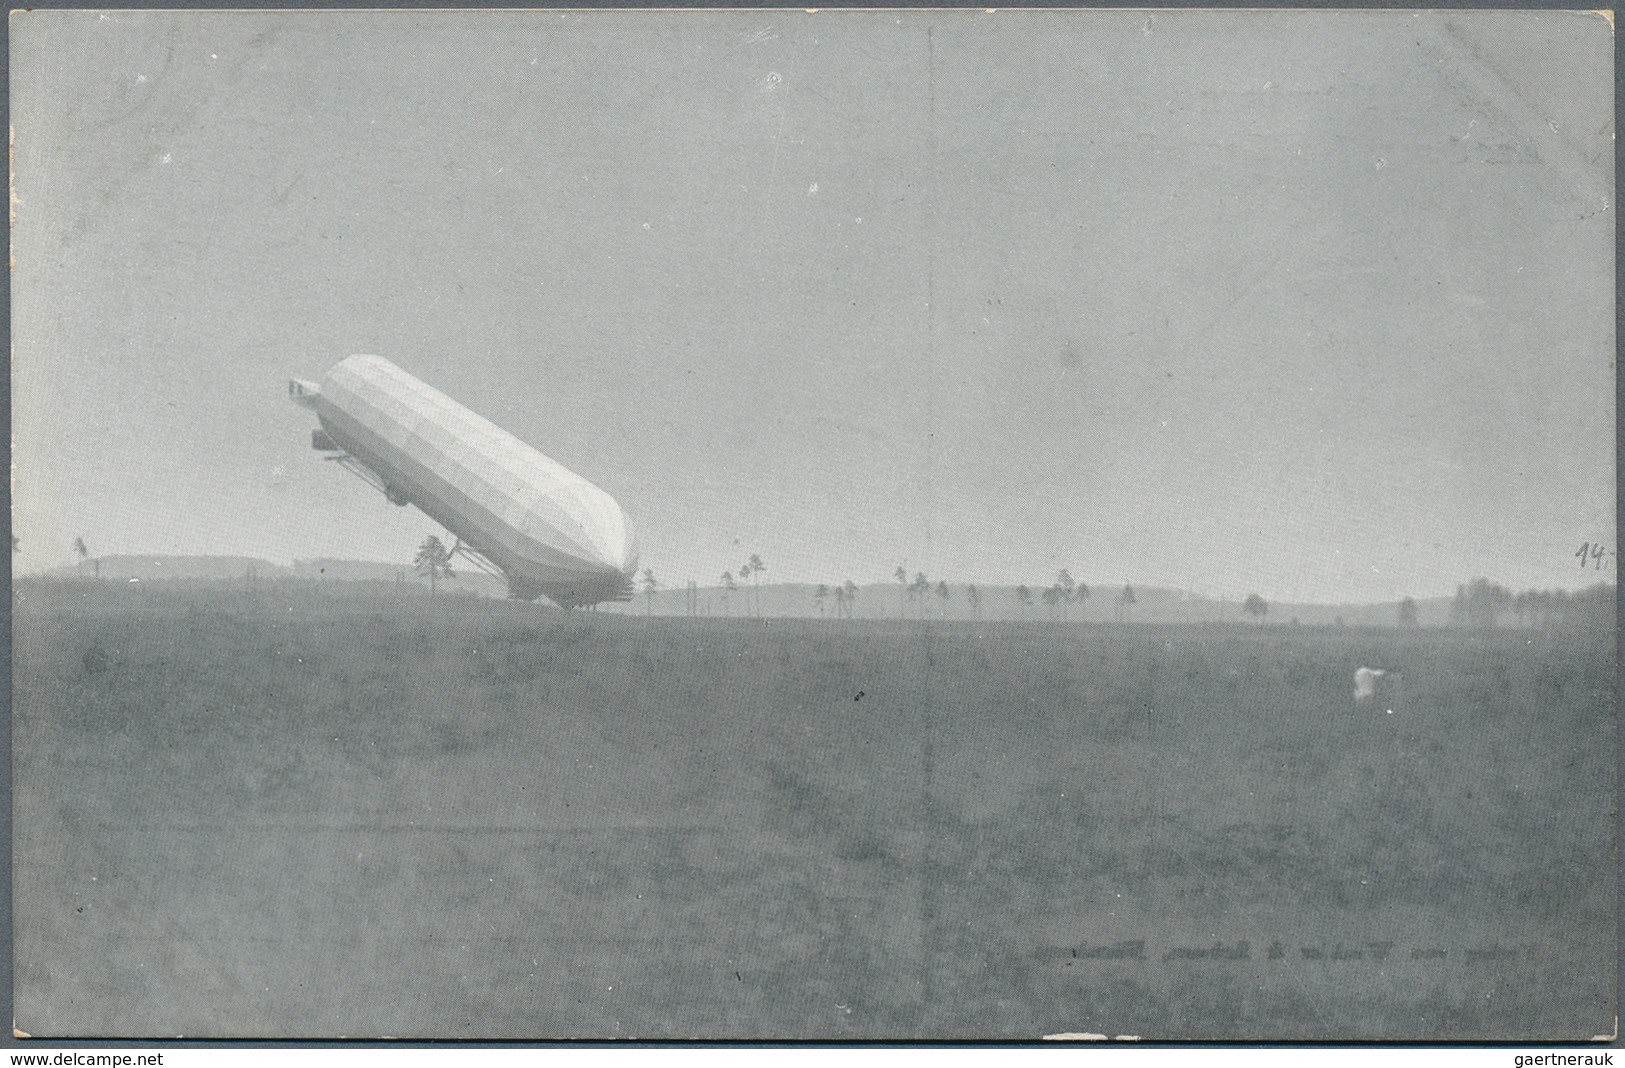 Ansichtskarten: Motive / Thematics: ZEPPELIN: Ca 185 Zeppelin postcards and a few photos, with a lar